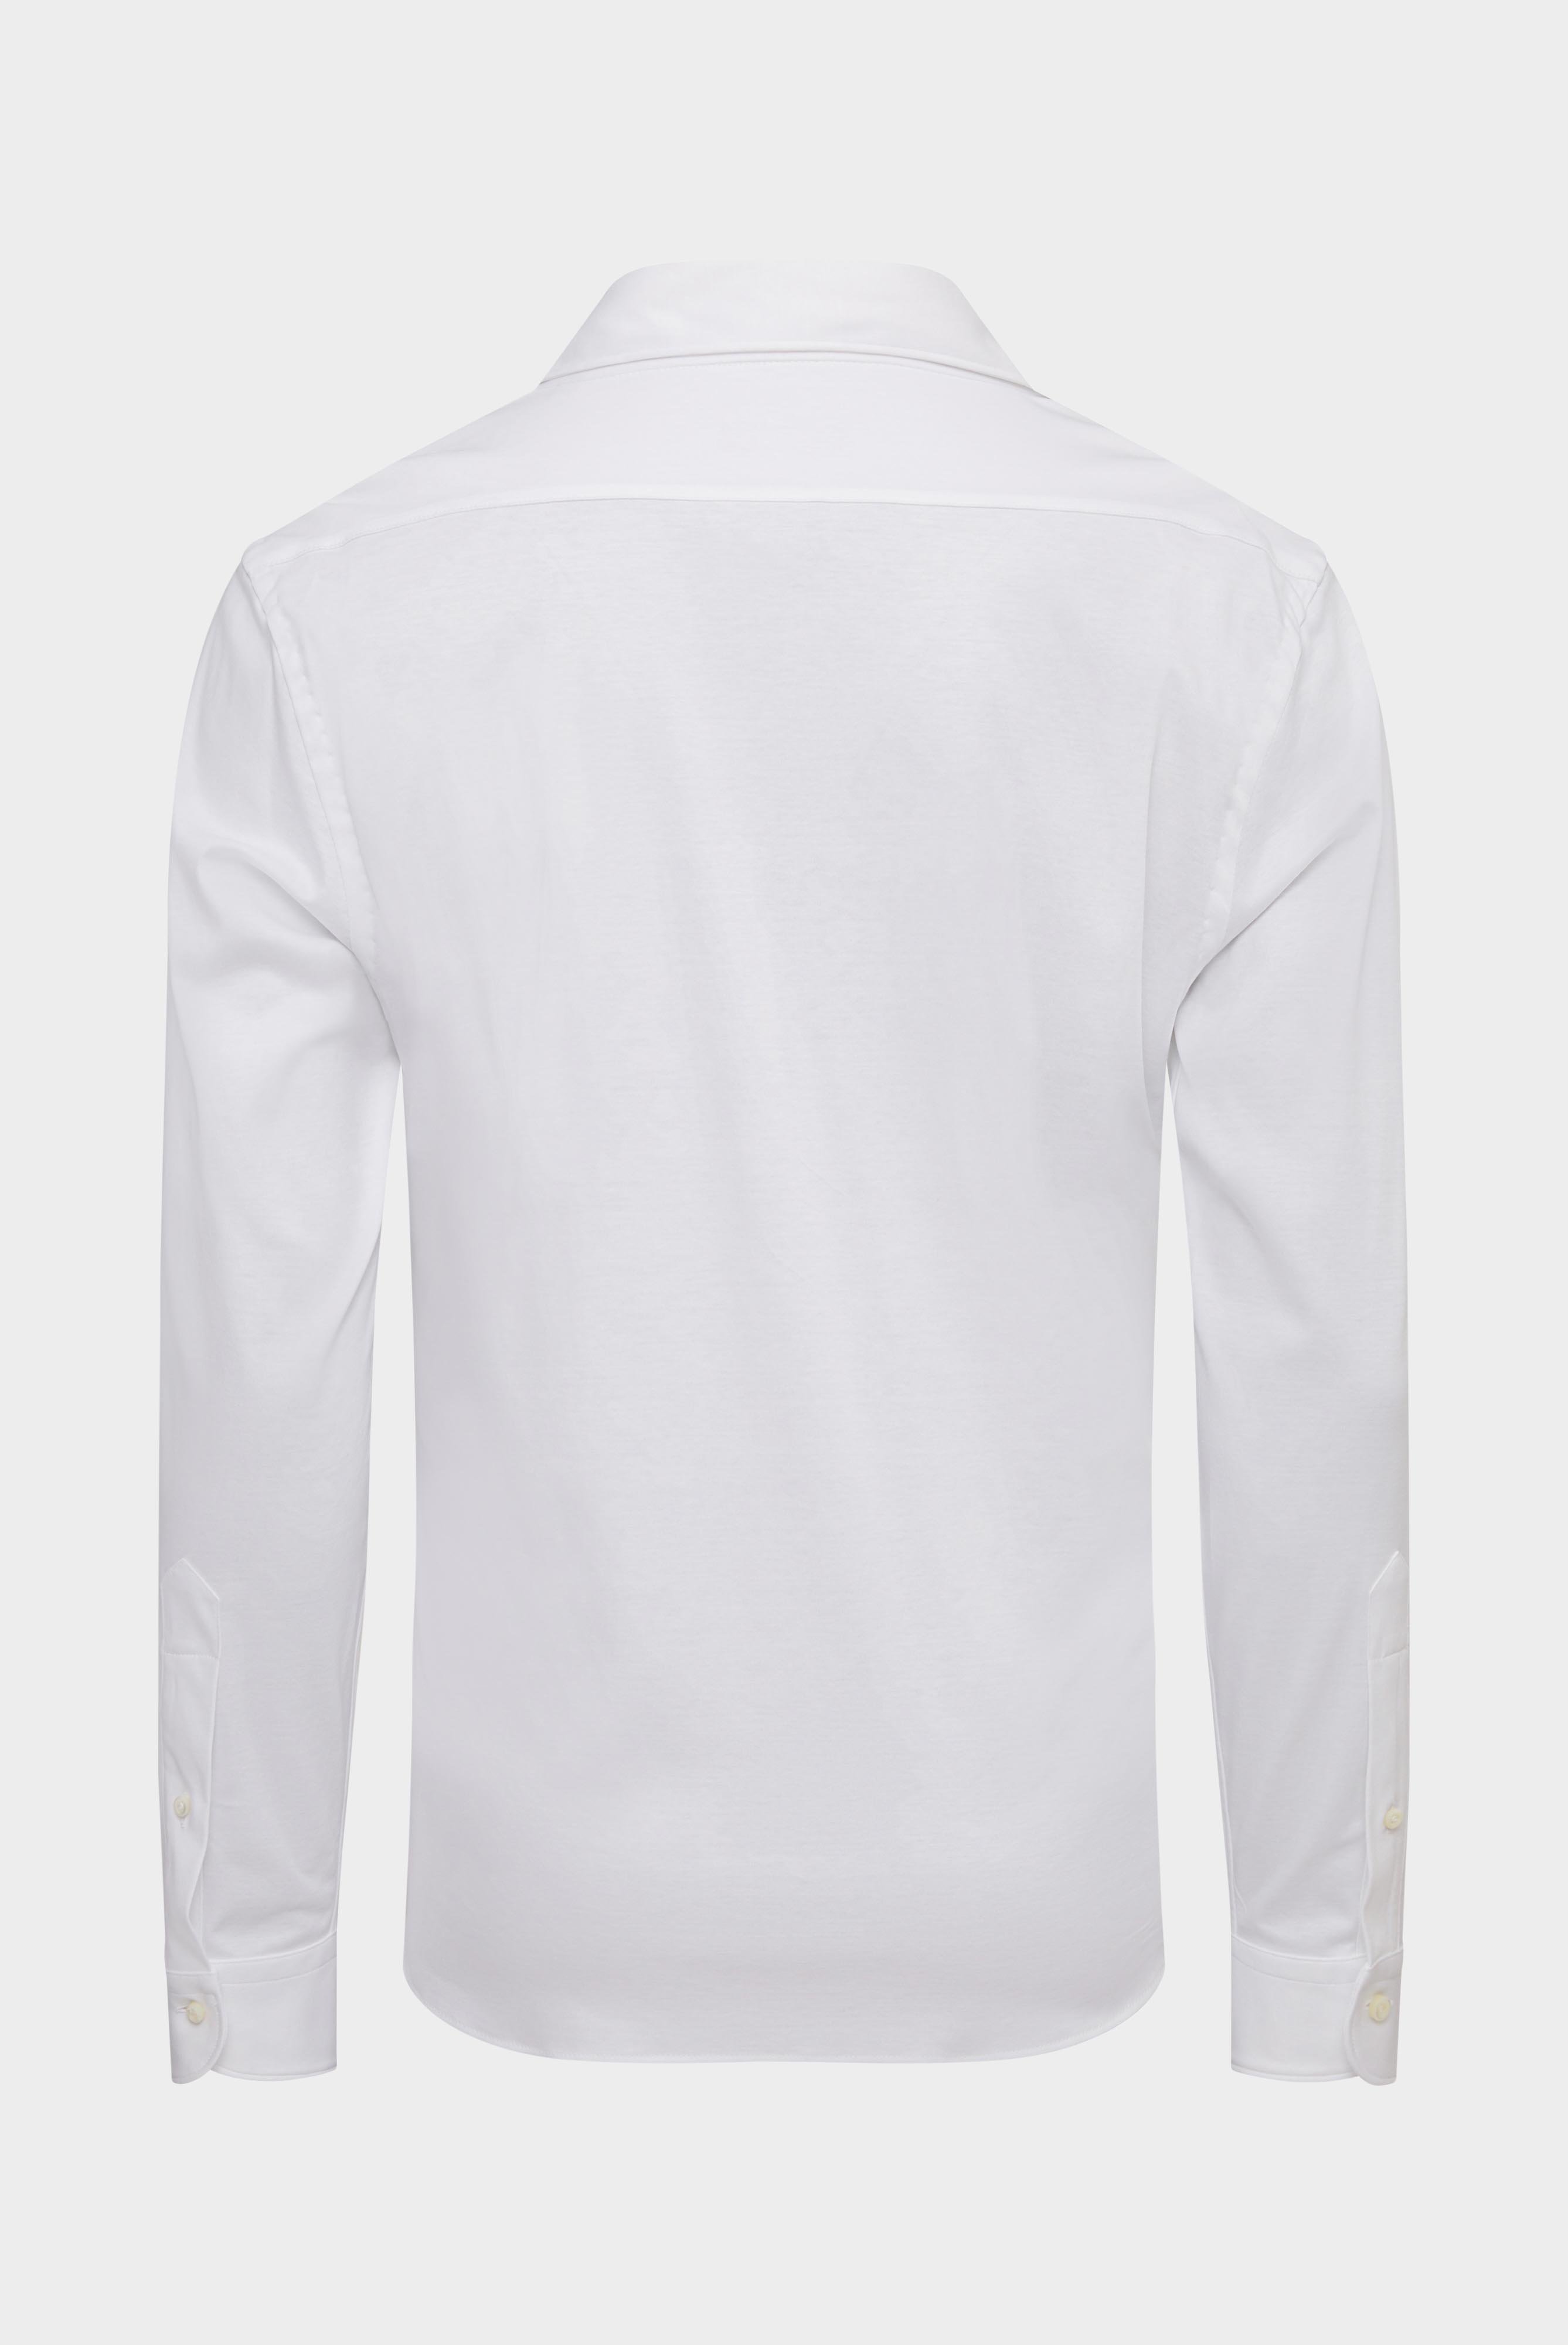 Bügelleichte Hemden+Jersey Hemd mit glänzender Optik Tailor Fit+20.1683.UC.180031.000.S